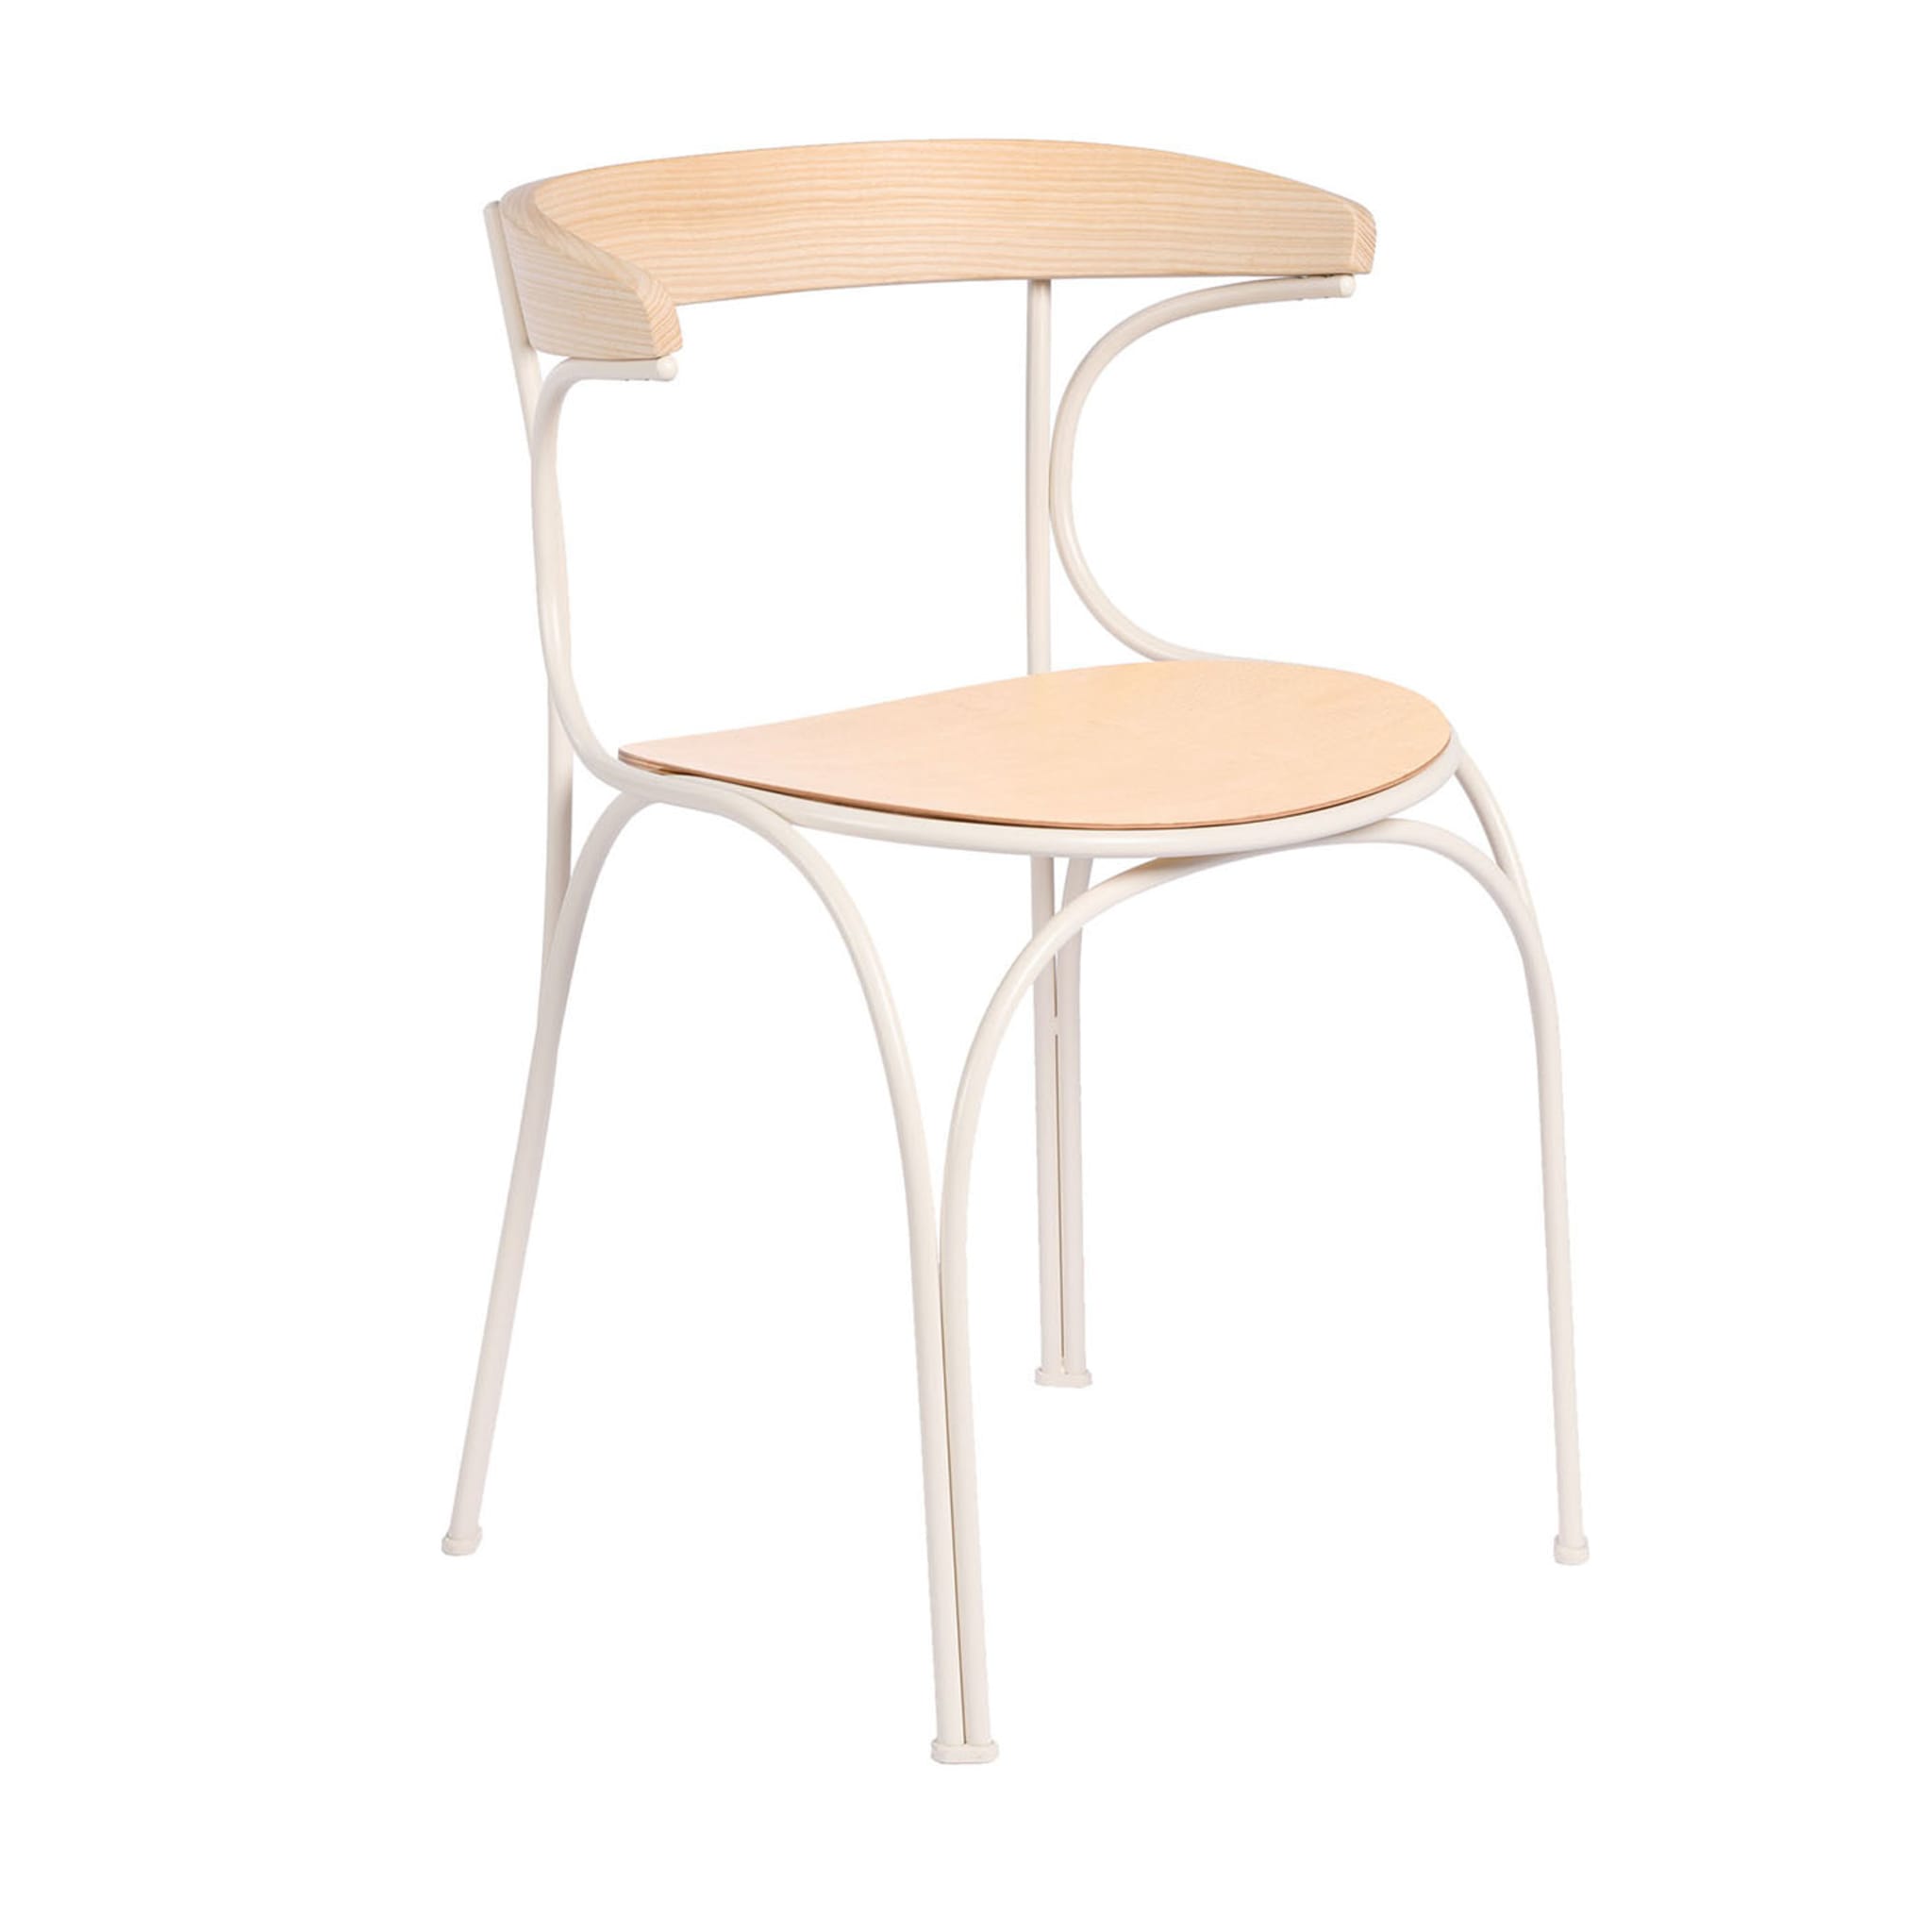 Ample Natural Stuhl von Nichetto Studio - Hauptansicht